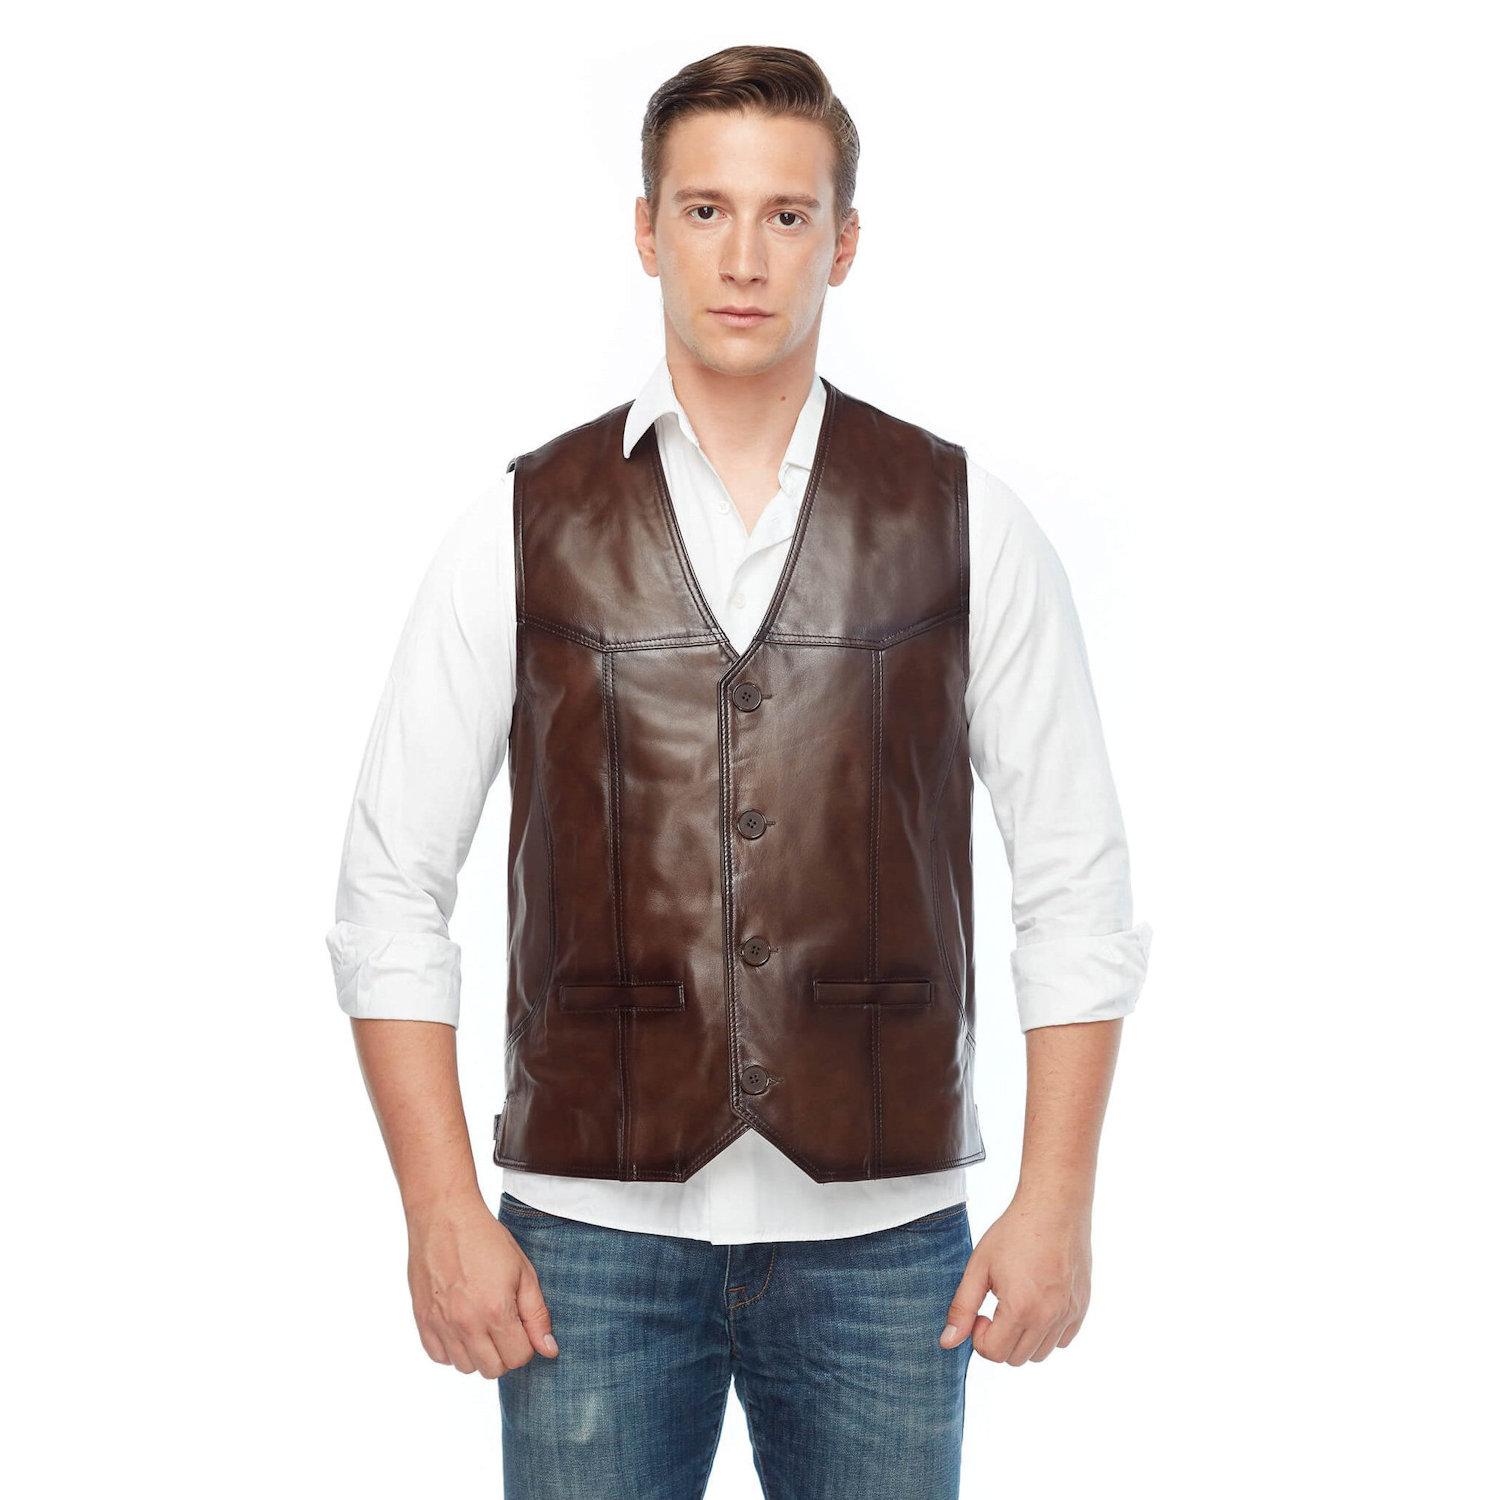 Deriza Men's Genuine Leather Vest